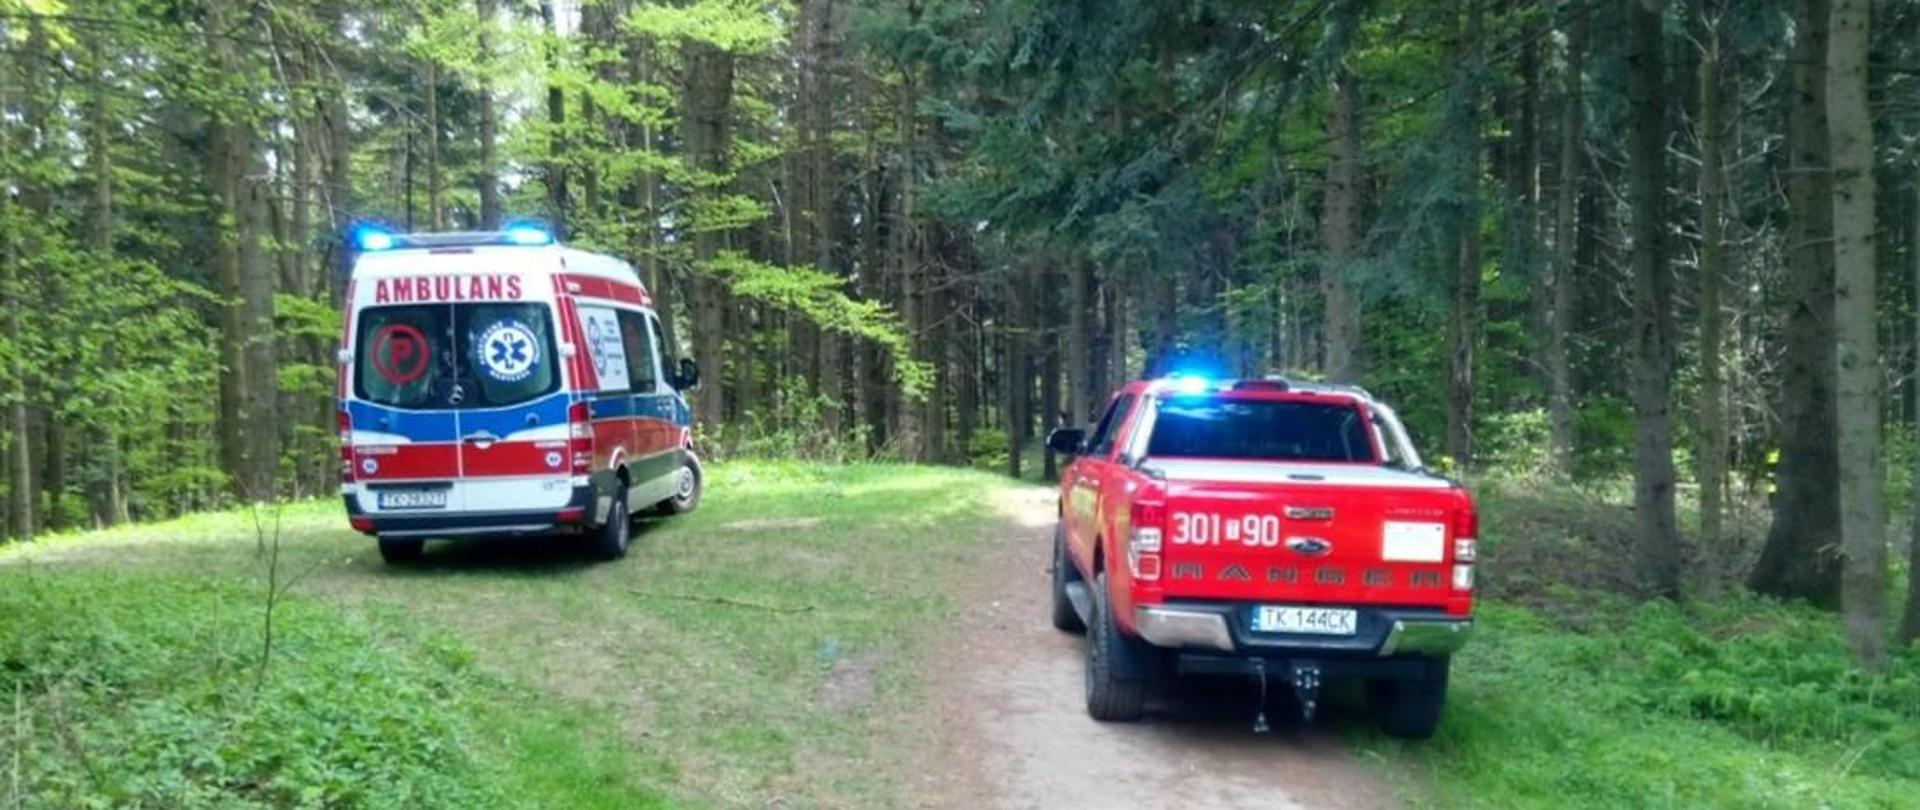 Zdjęcie przedstawia ambulans Zespołu Ratownictwa Medycznego oraz samochód operacyjny Państwowej Straży Pożarnej stojące na leśnej polanie.